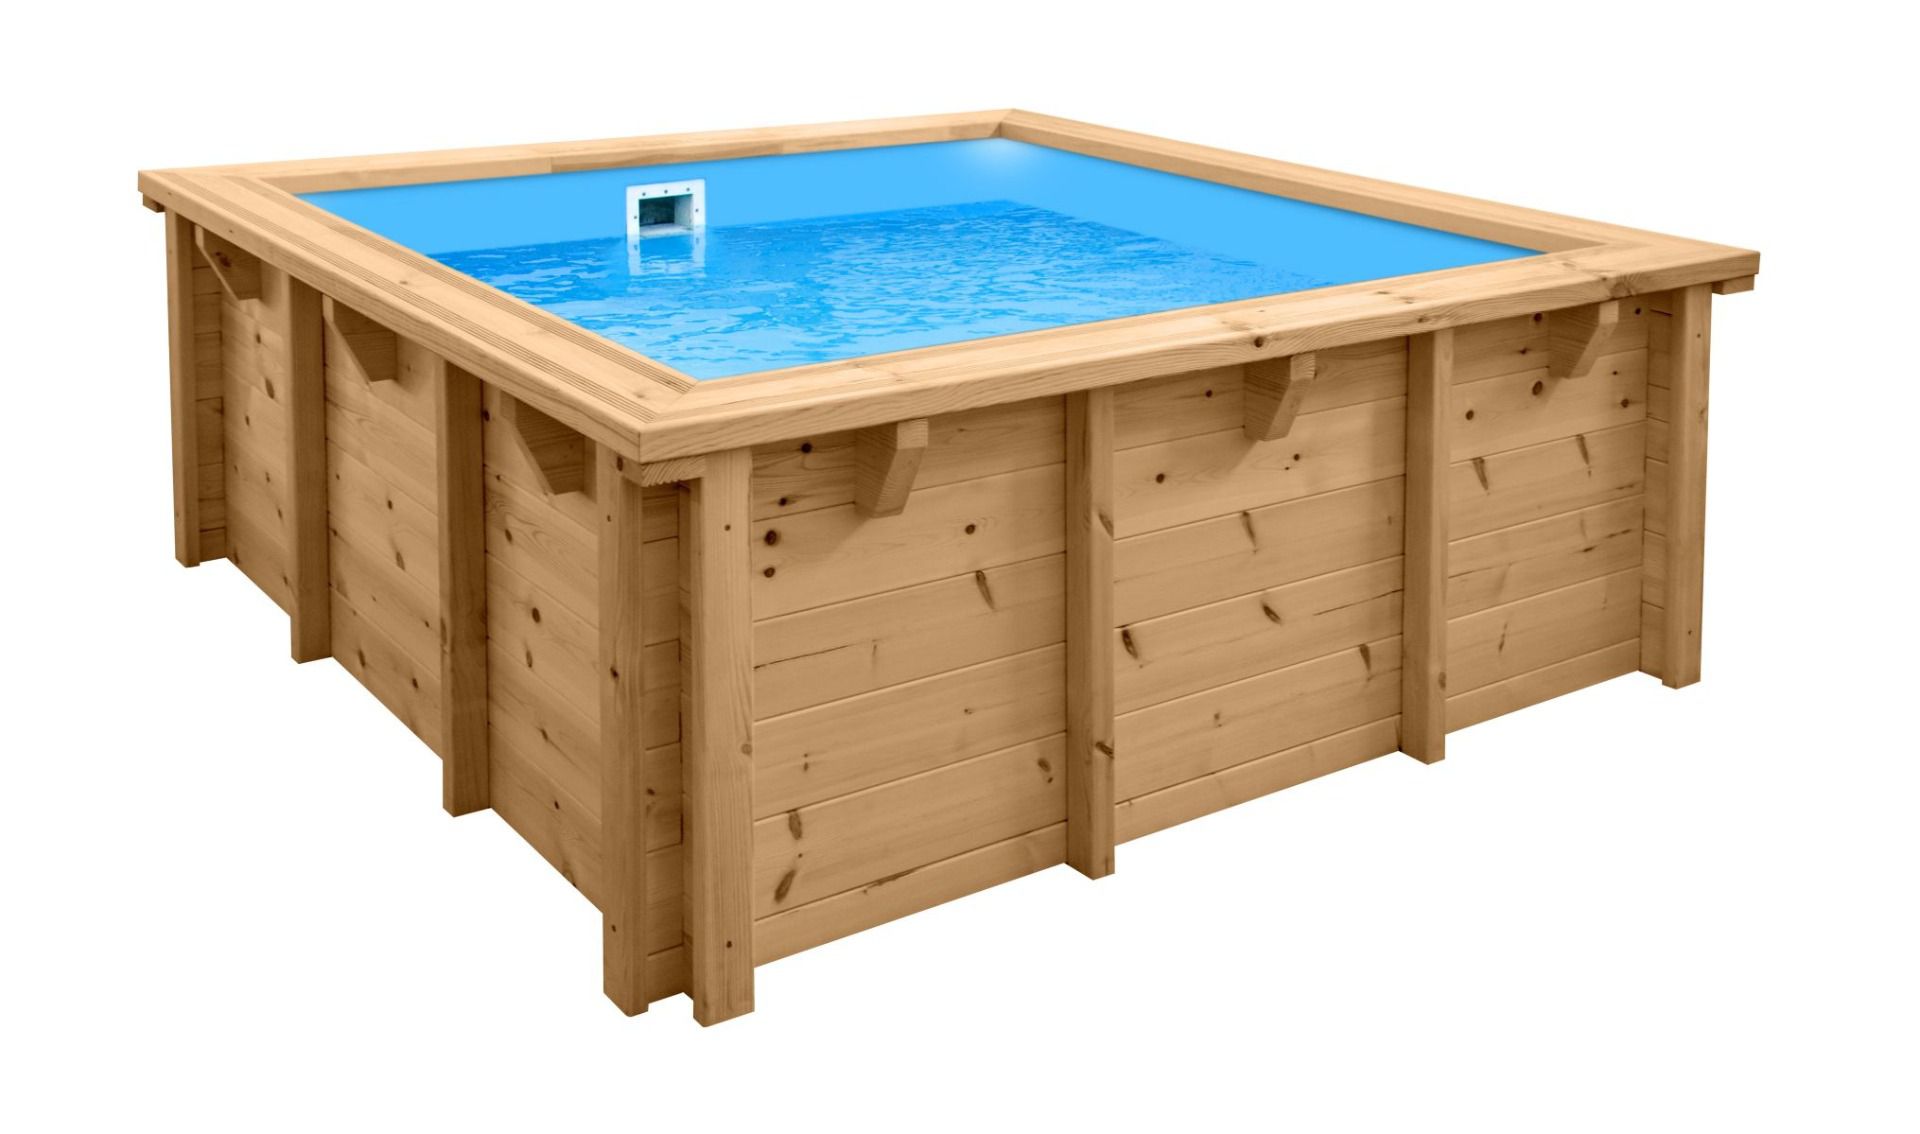 Piscina moderna Sunnydream 01 in legno, 2,10 x 2,10 metri, incluso sistema di filtraggio premium, materiale filtrante, liner per piscina, telo per pavimento e pareti, giunti angolari in acciaio inox